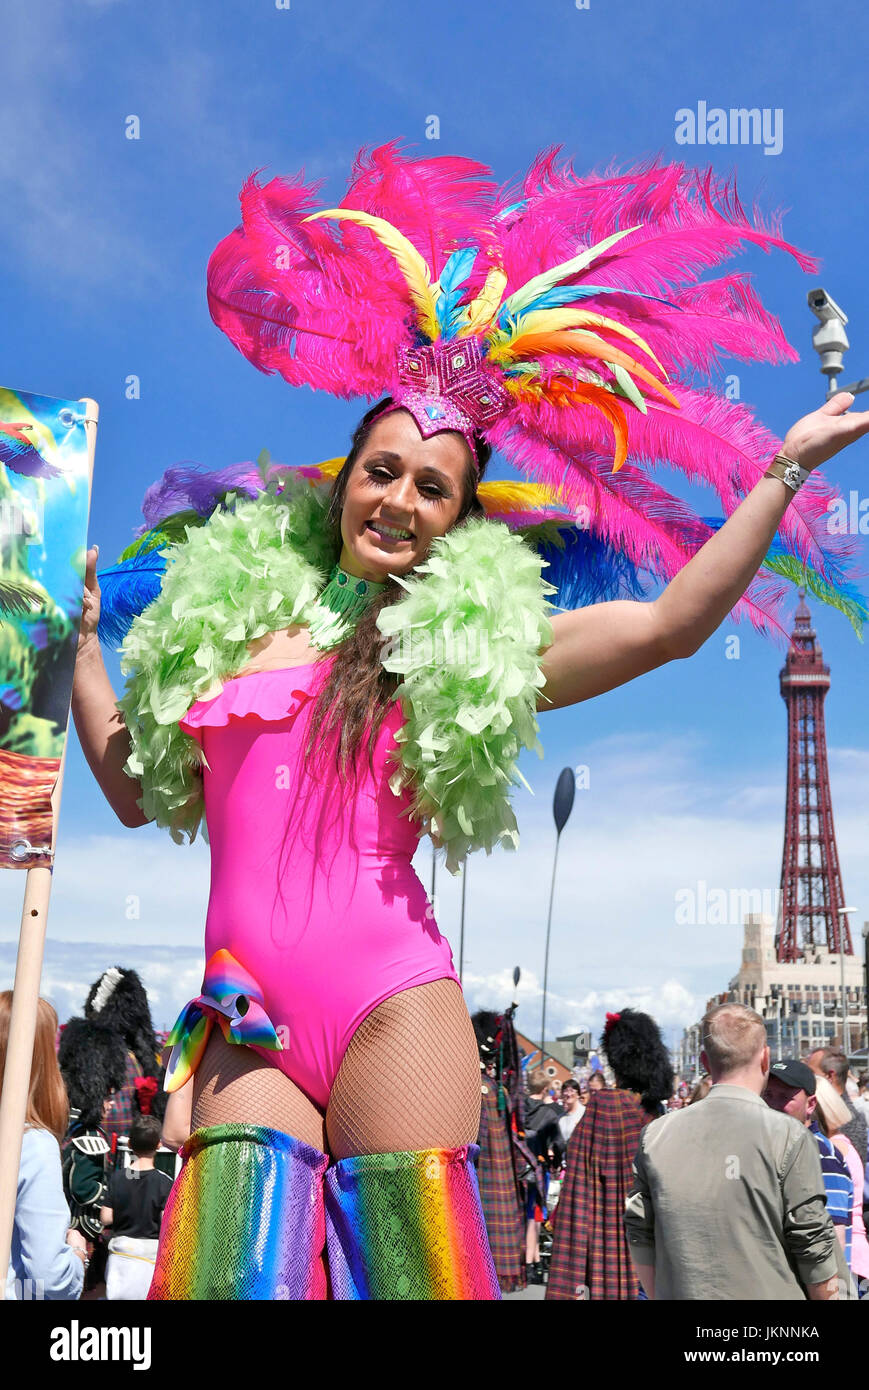 Blackpool, Royaume-Uni. 23 juillet, 2017. Le premier carnaval international de Blackpool : le premier carnaval international a lieu dans la ville en bord de mer sous le soleil d'été glorieuse sur la promenade, entre le centre et le Sud des jetées. Échasses colorés.girl Crédit : Kev Walsh/Alamy live news Banque D'Images